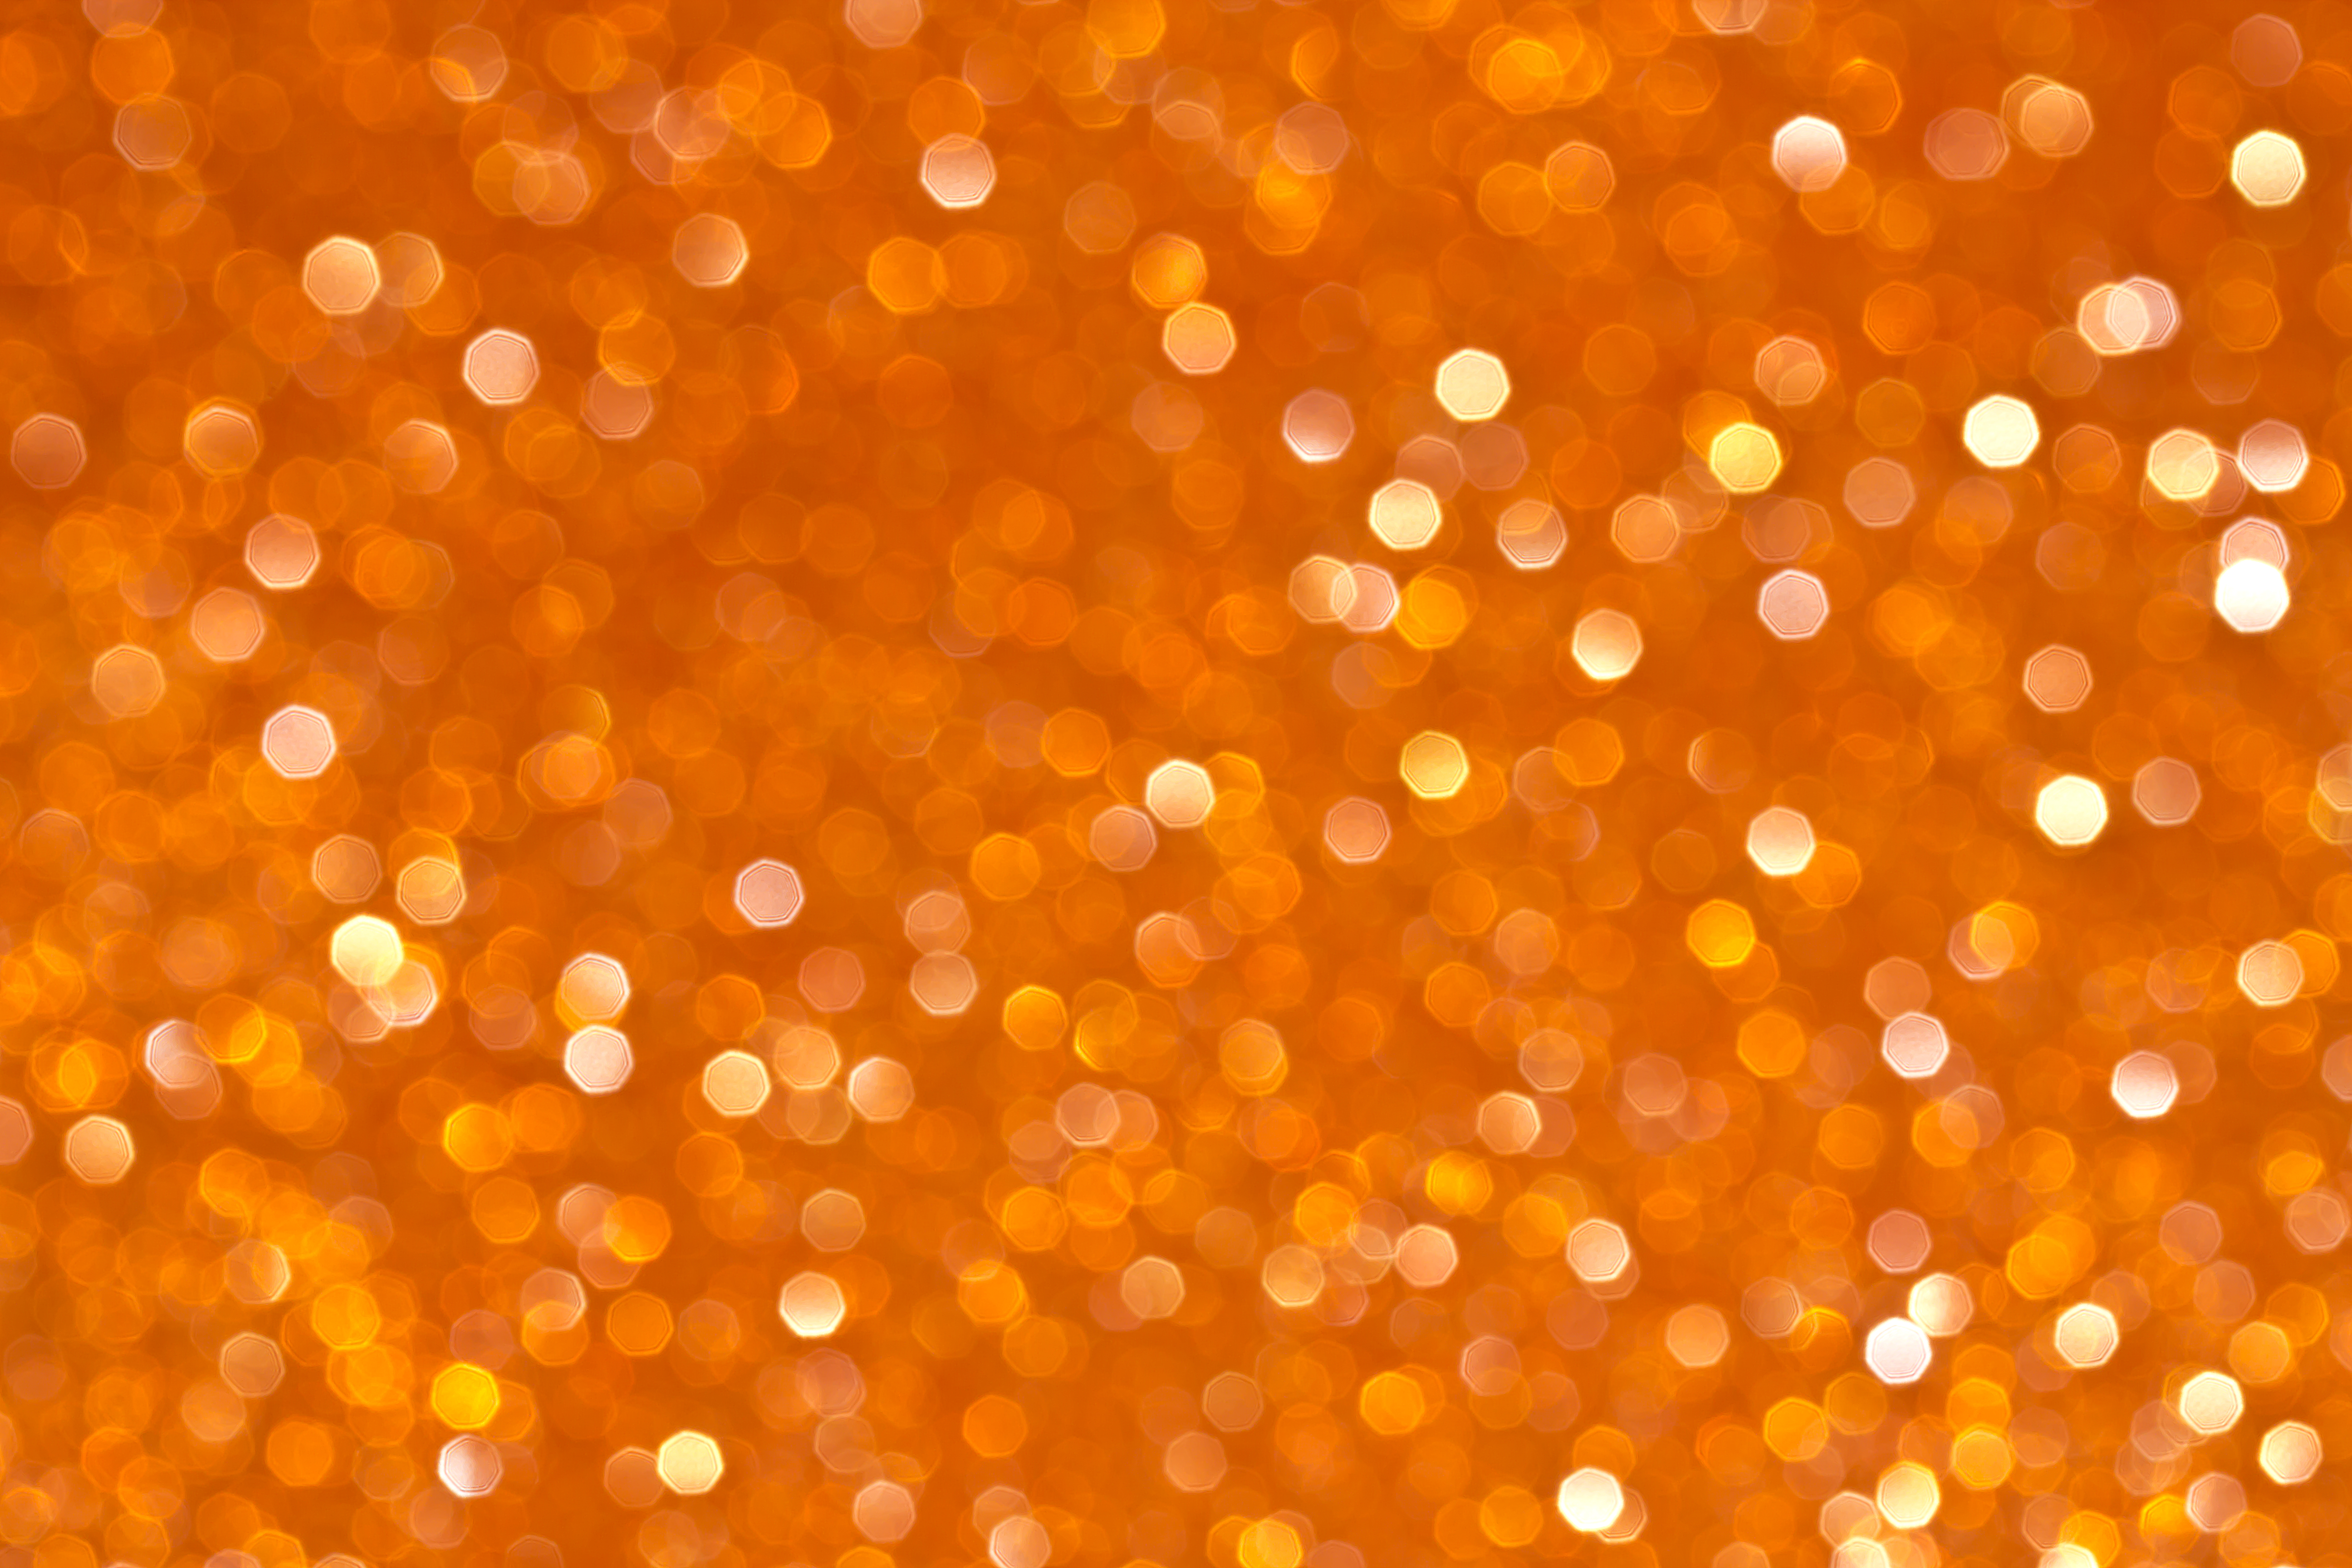 Скачать обои бесплатно Оранжевый, Боке, Блеск, Блики, Текстуры картинка на рабочий стол ПК